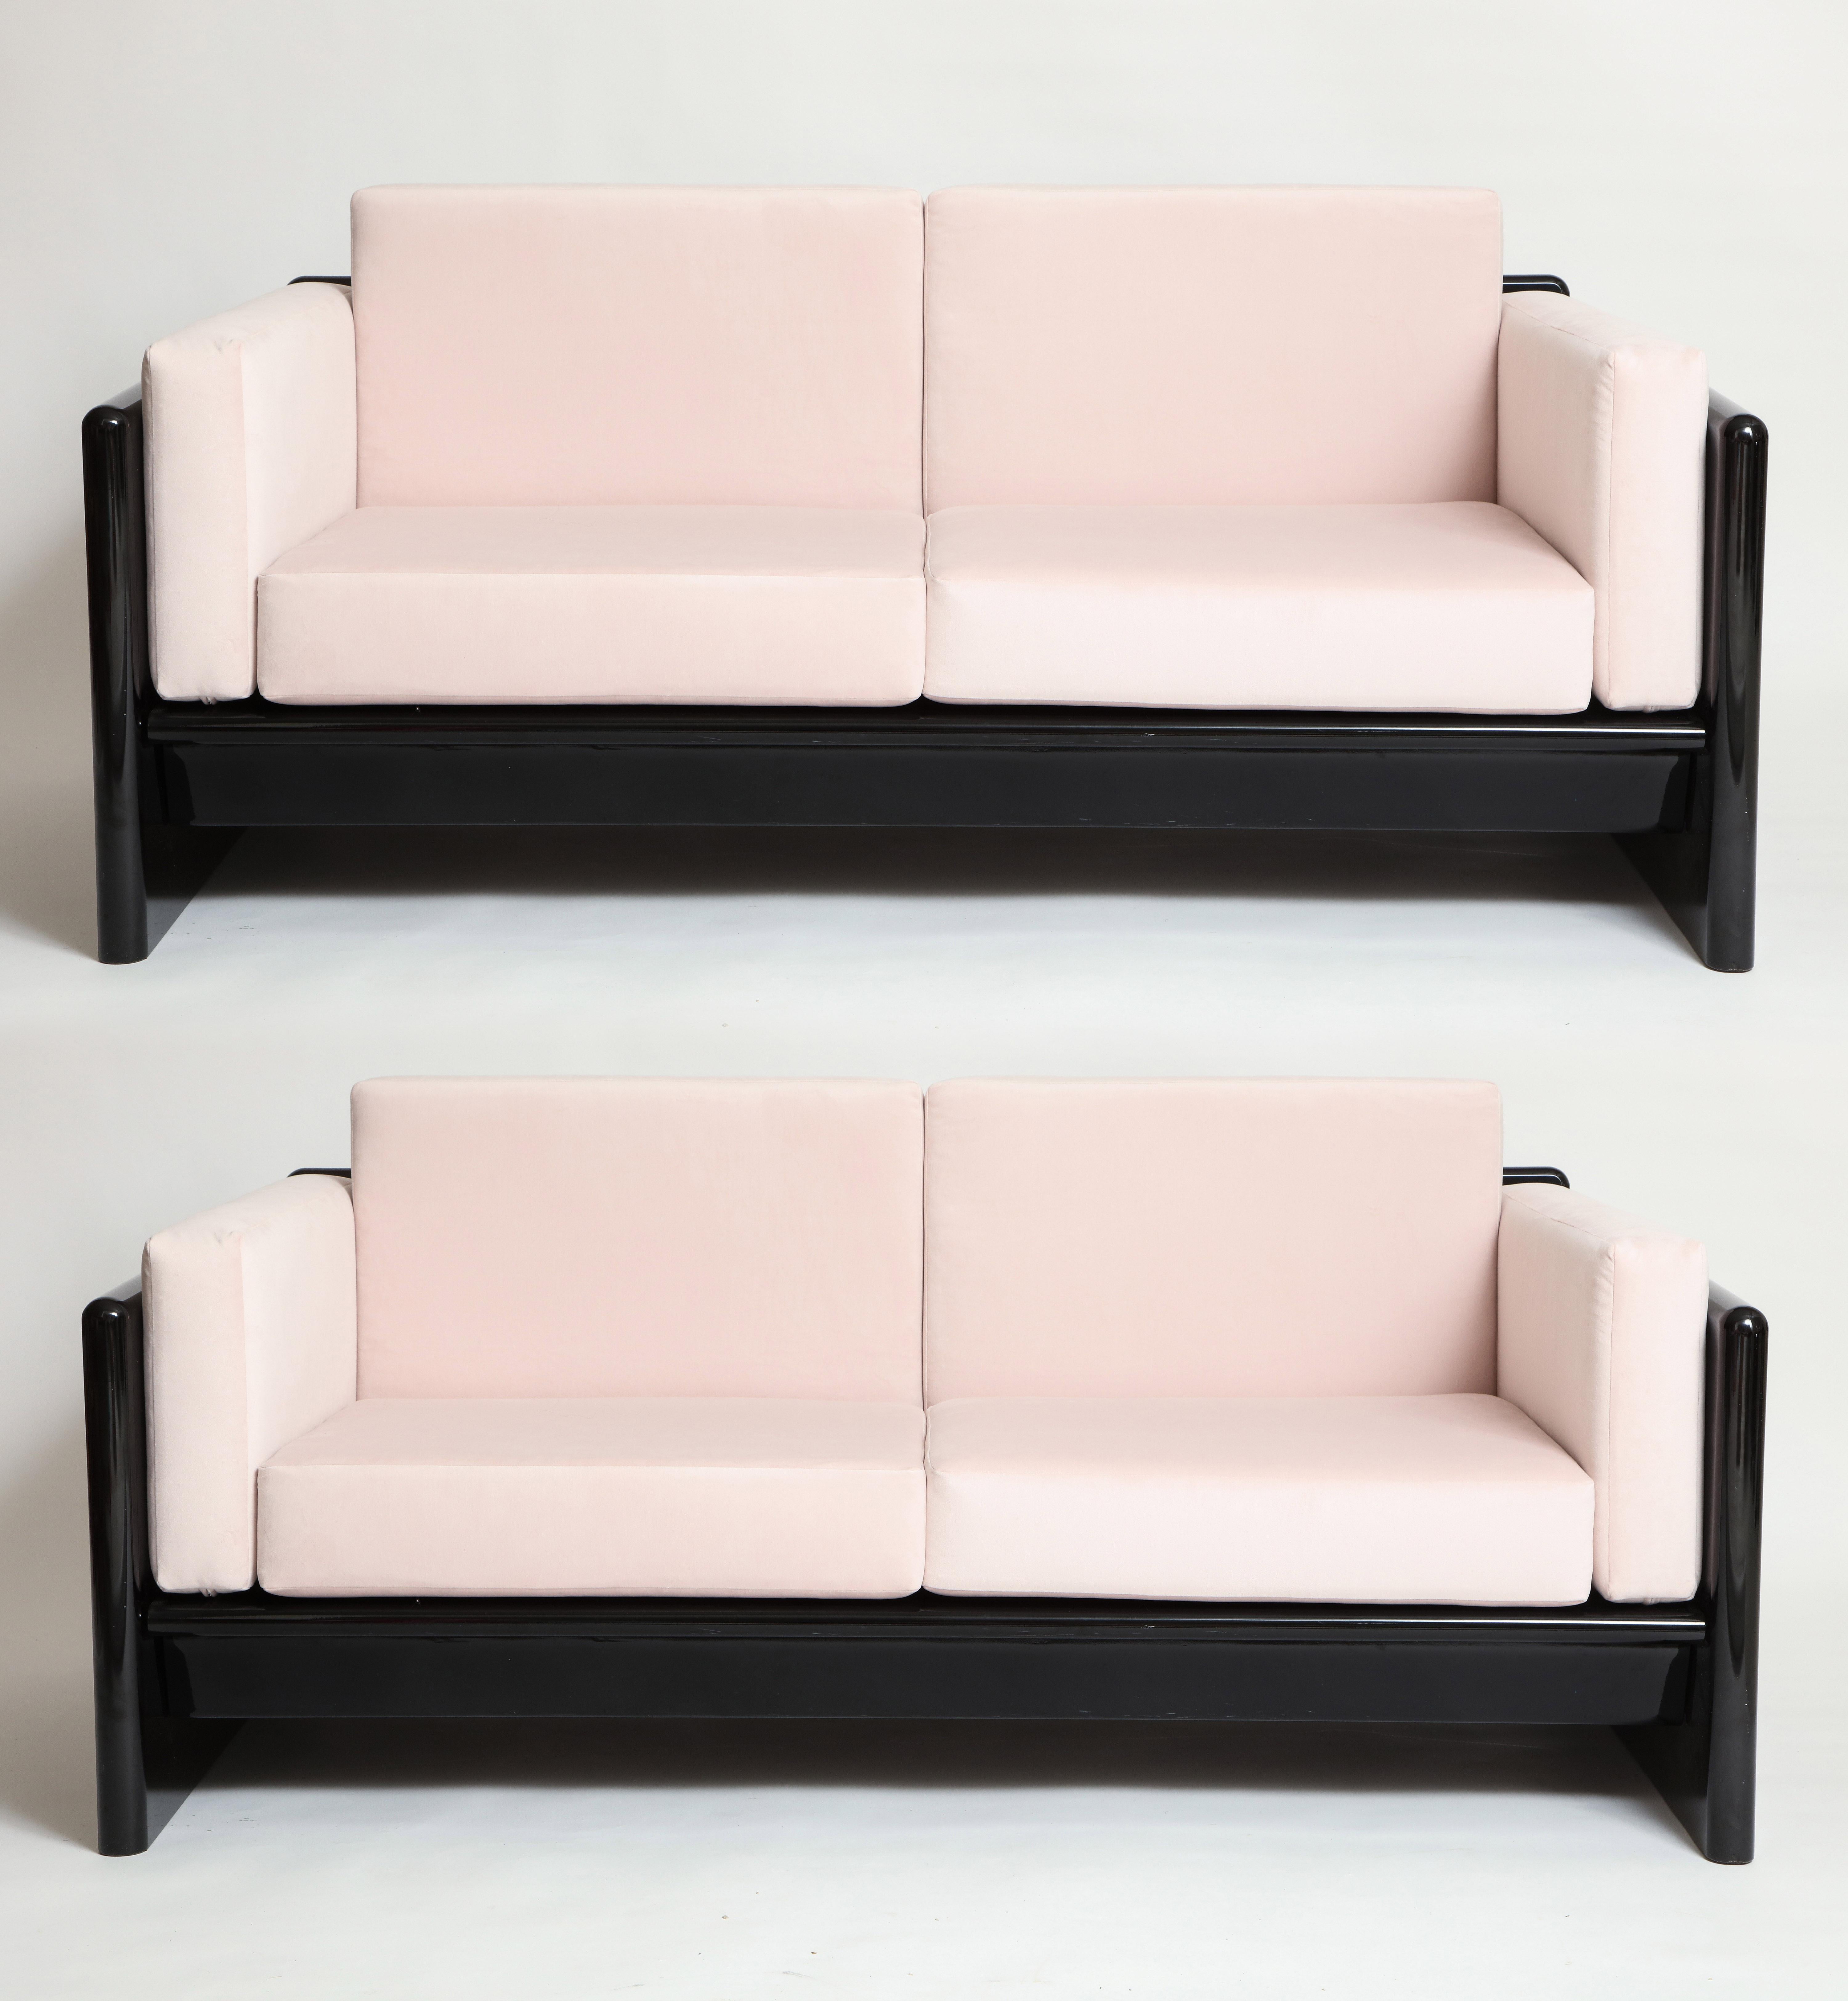 Simon Gavina Schwarzes Lacksofa mit rosa Samt, Italien, 1970er

Wunderschönes schickes schwarz-rosa Sofa/Sofa, neu gepolstert mit hellrosa Stoff.
Das Schwarz ist Massivholz, das mit schwarzem Lack überzogen ist. Dies ist ein solides, schweres